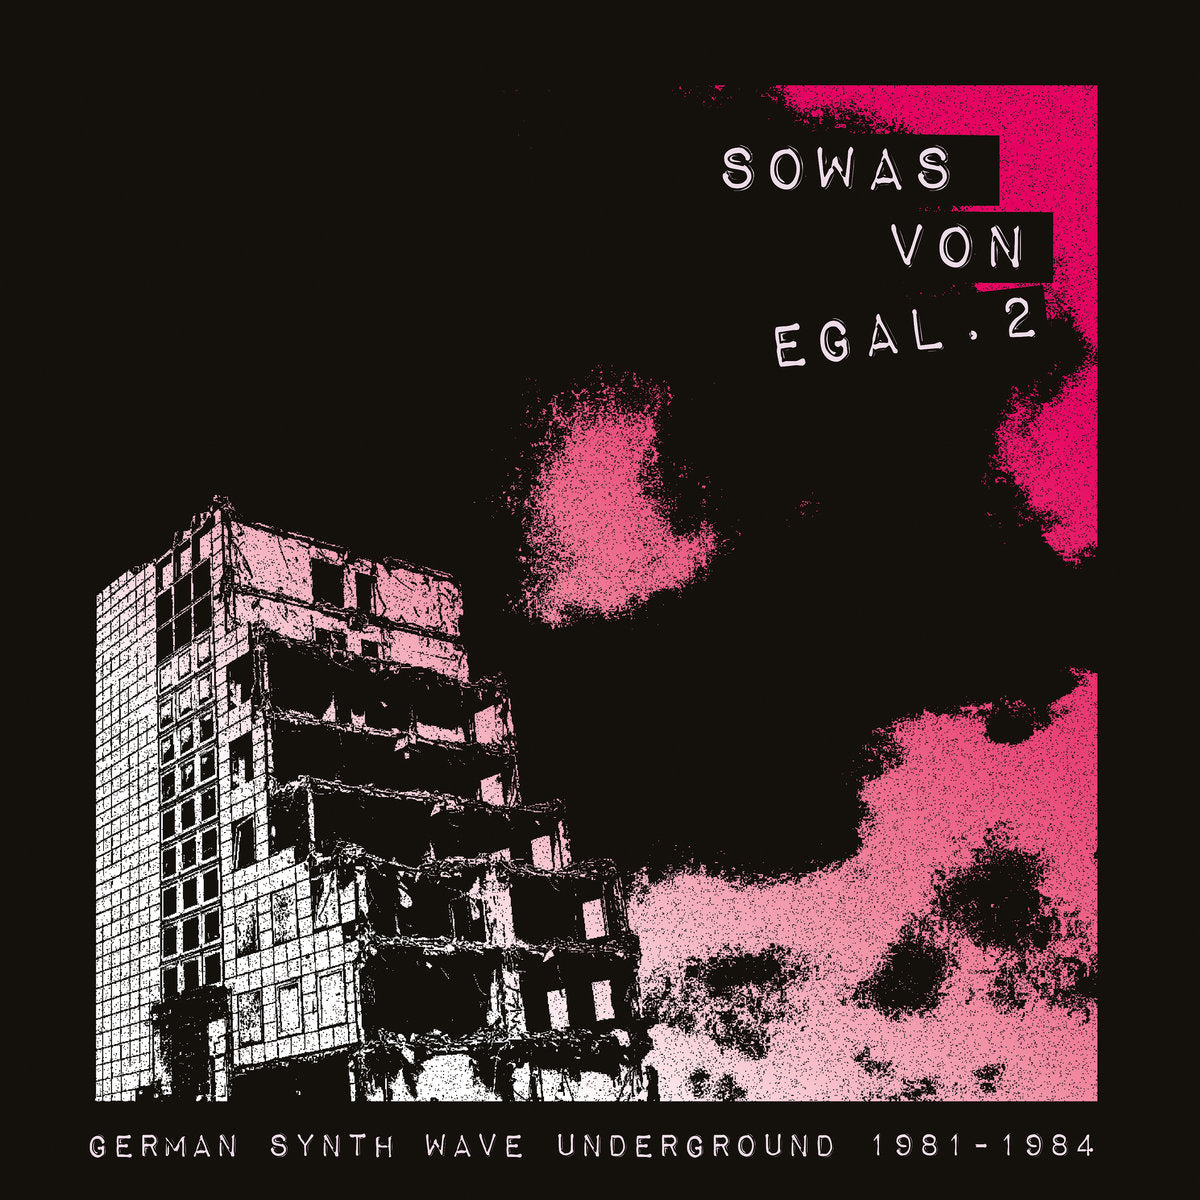 Sowas von egal 2 (German Synth Wave Underground 1981-84) (New 2LP)